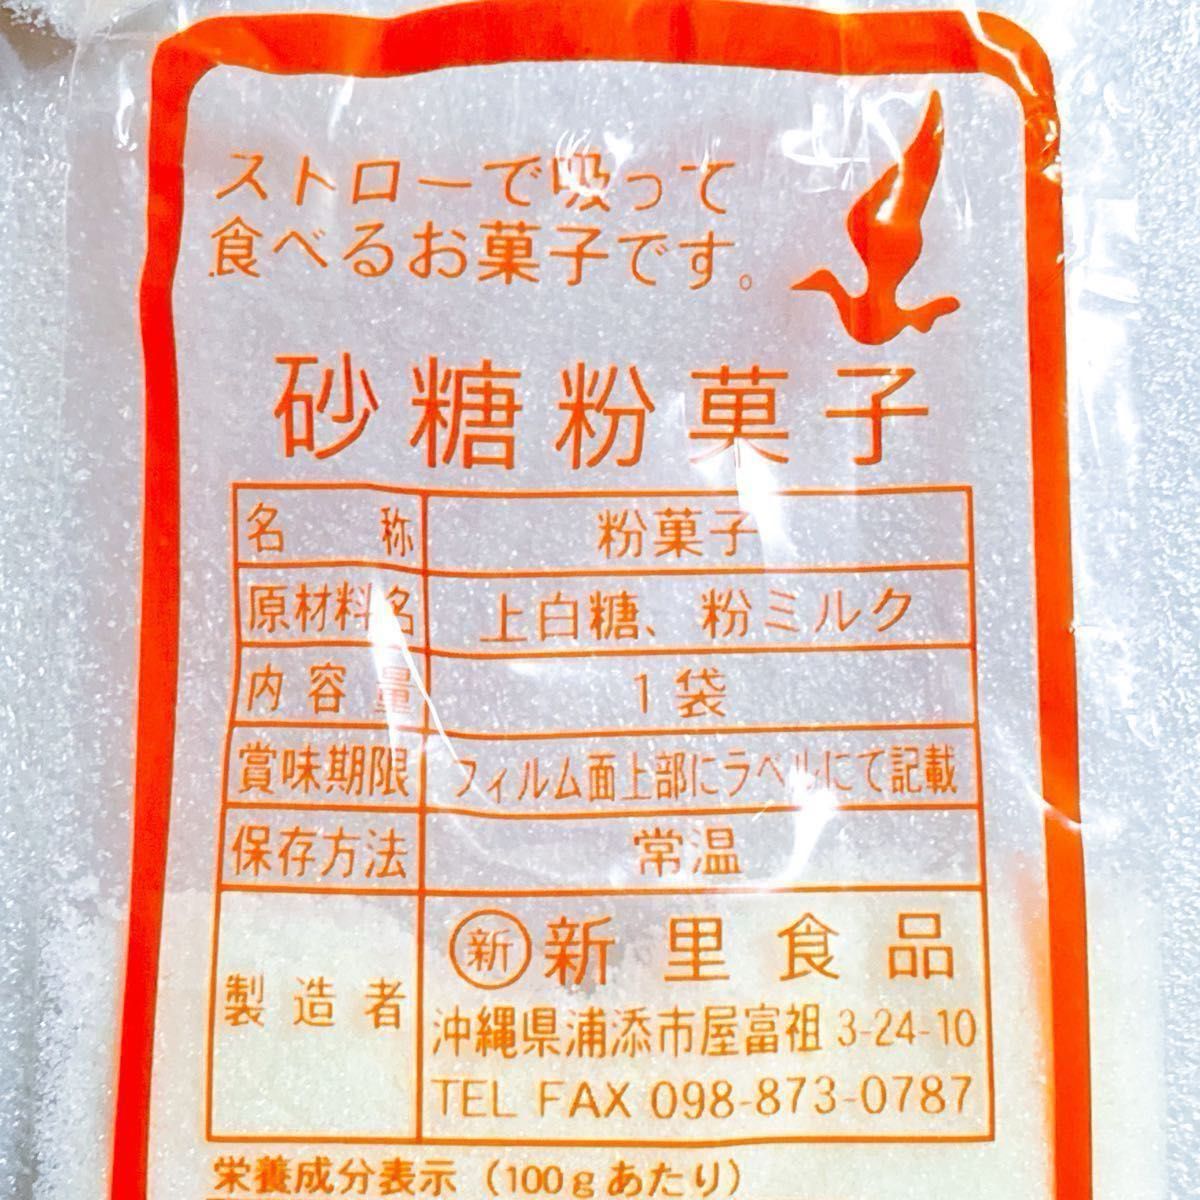 【人気商品】沖縄 砂糖粉菓子(１０袋セット) 新里食品 おやつ お茶菓子 特売品 お試し